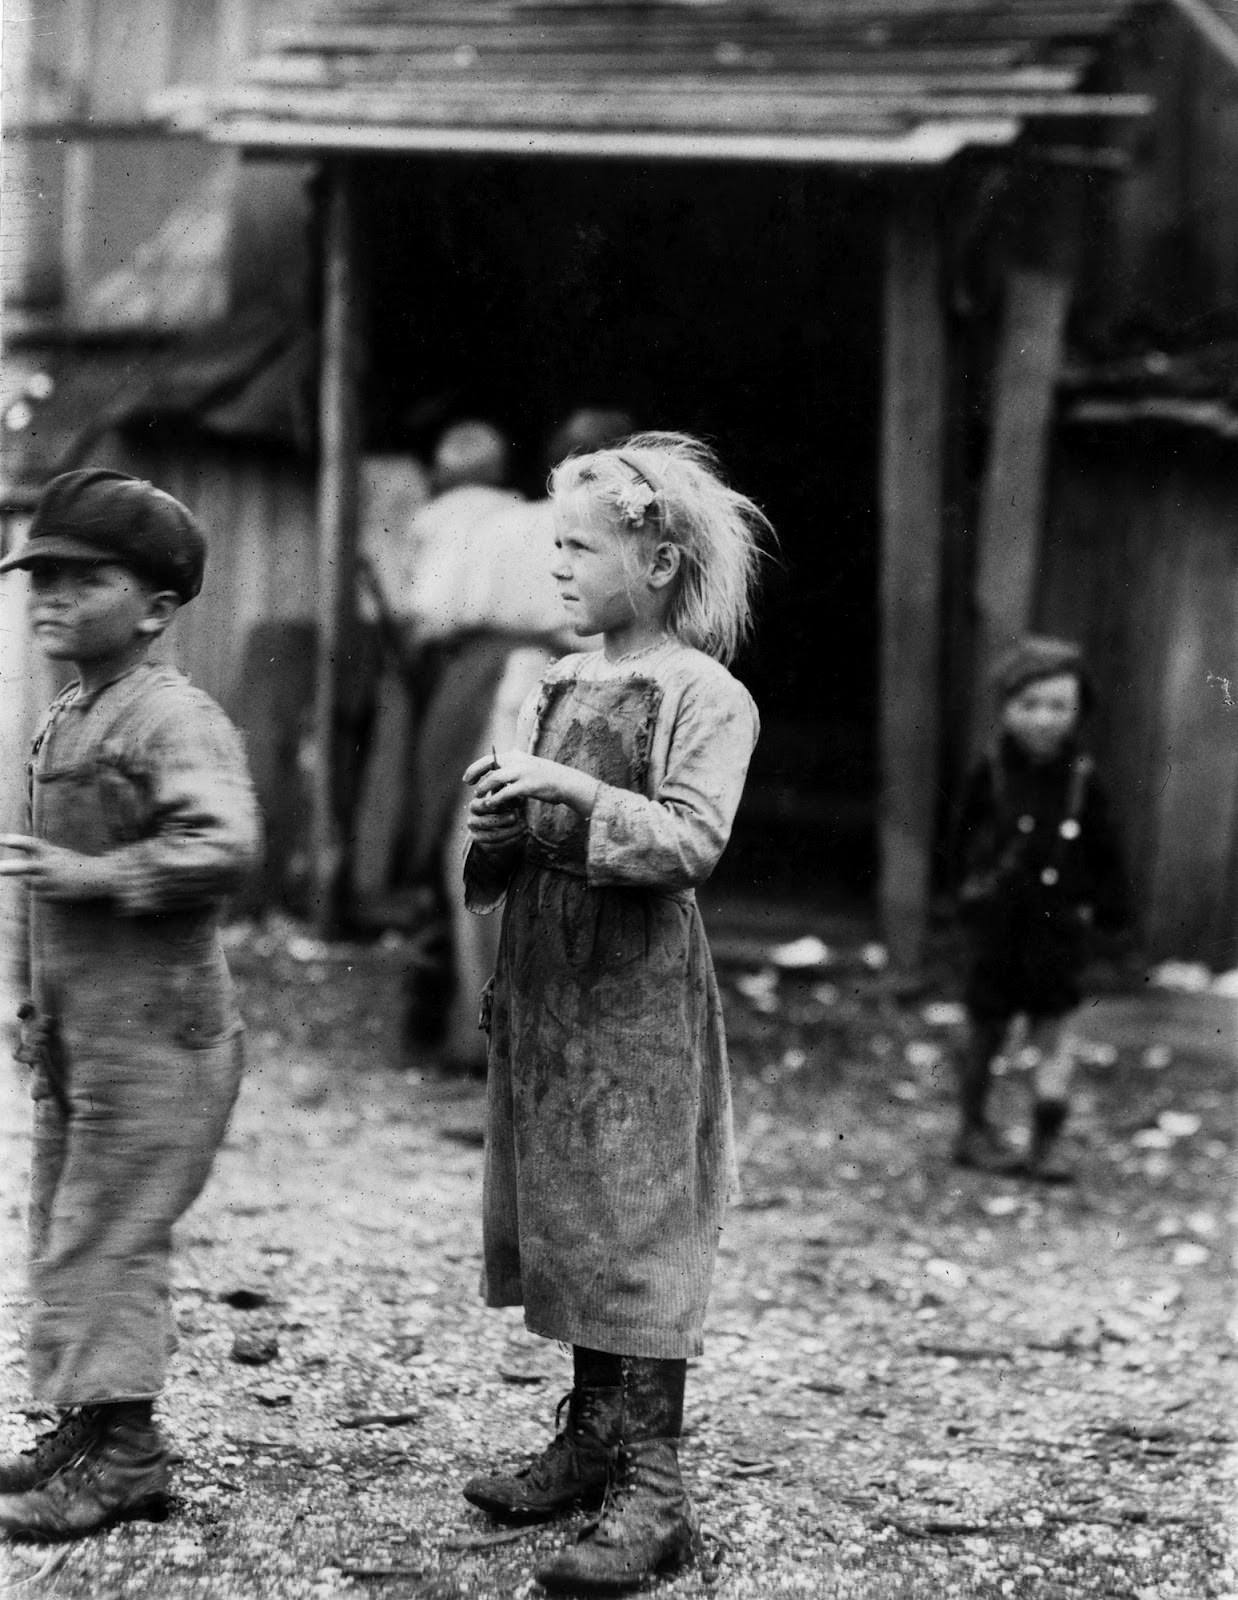 Южная Каролина, дети работают на фабрике устриц. 1912 г.